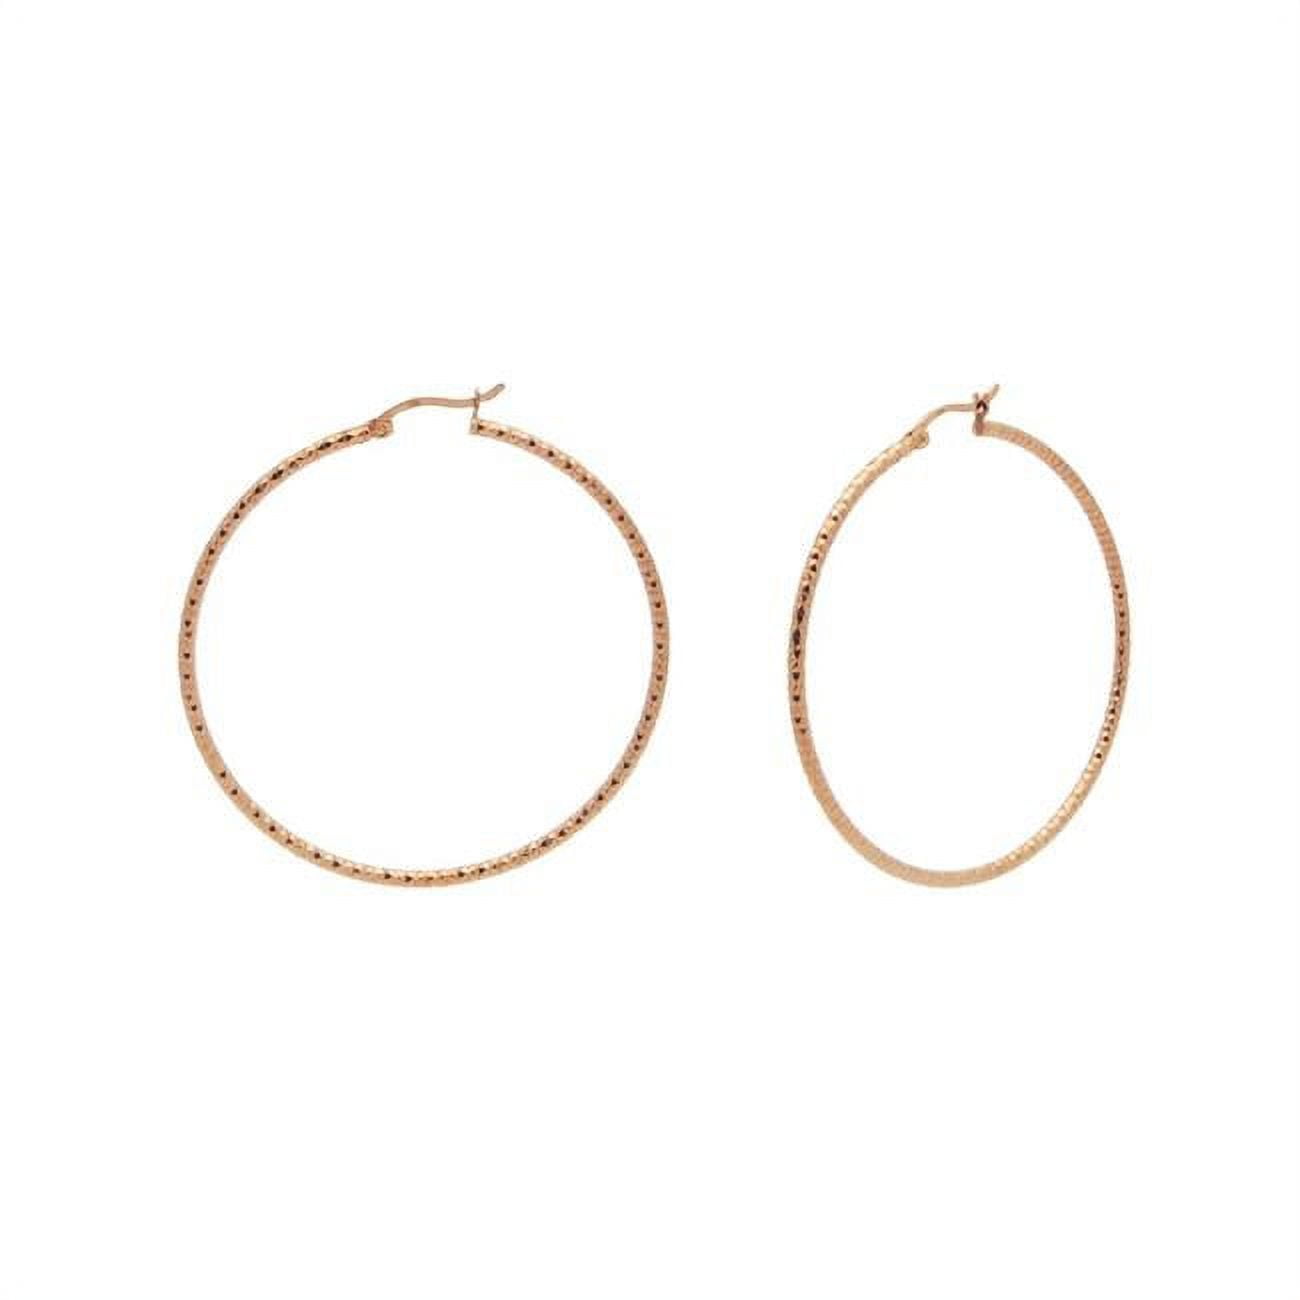 155110p Rose Gold Diamond Cut Hoop Earrings In Sterling Silver, Medium